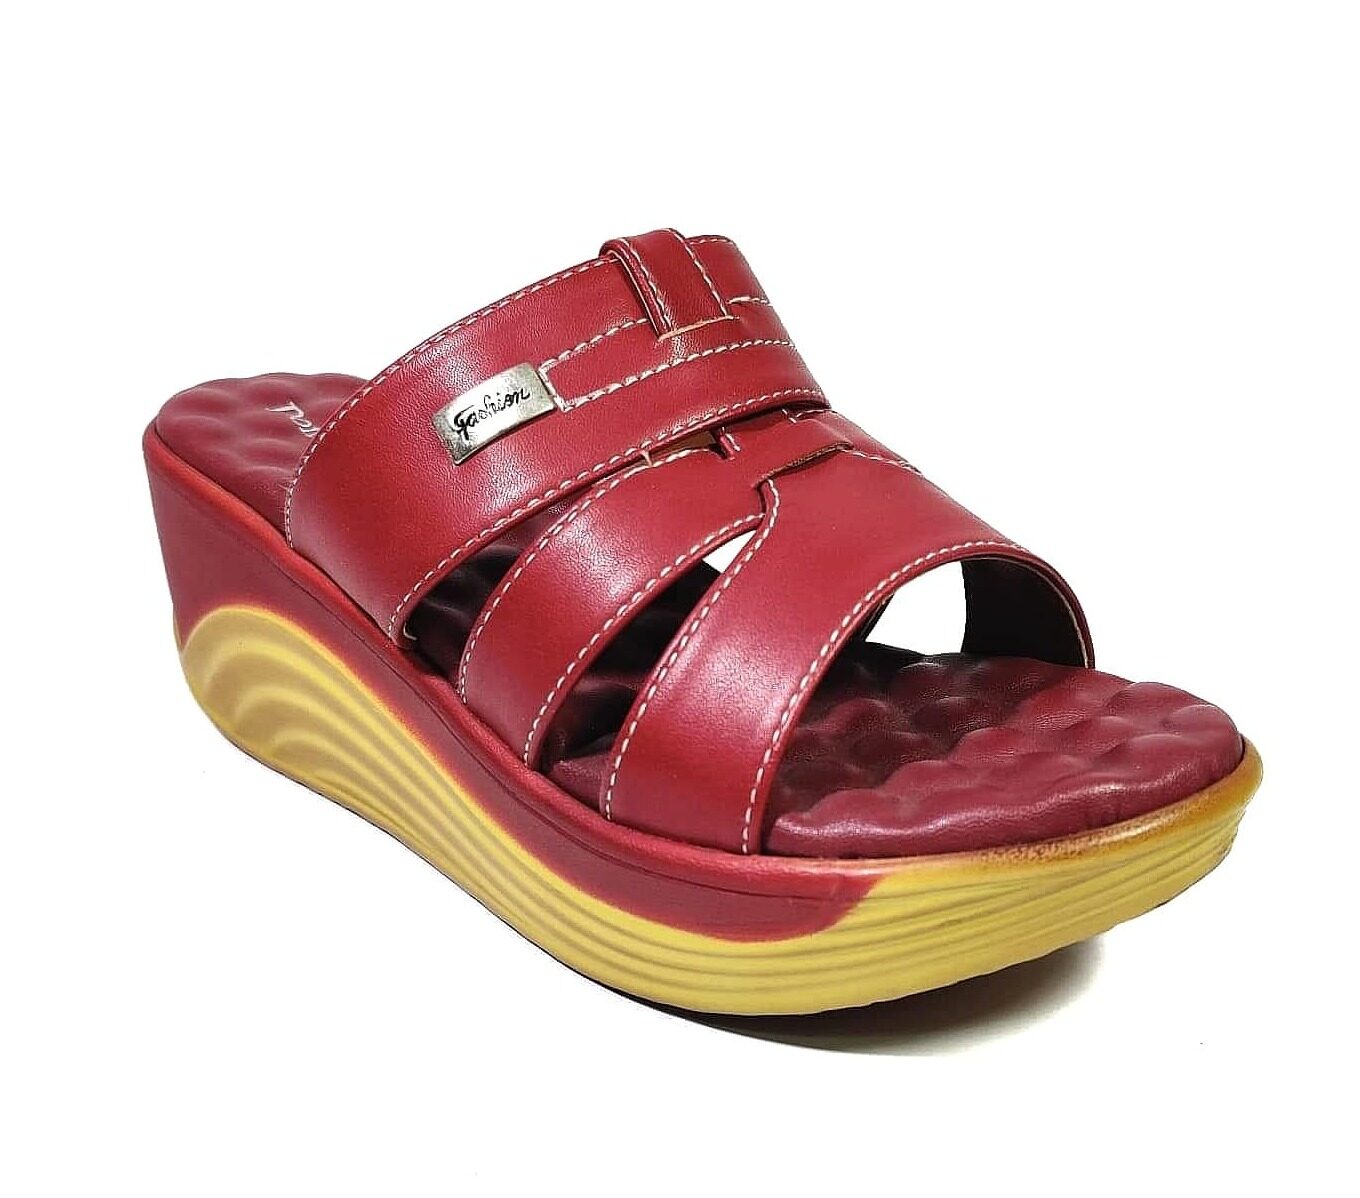 (พร้อมส่ง) รองเท้าผู้หญิง รองเท้า รองเท้าเพื่อสุขภาพหญิงรุ่น35153หนังนิ่ม สีแดงเลือดหมู